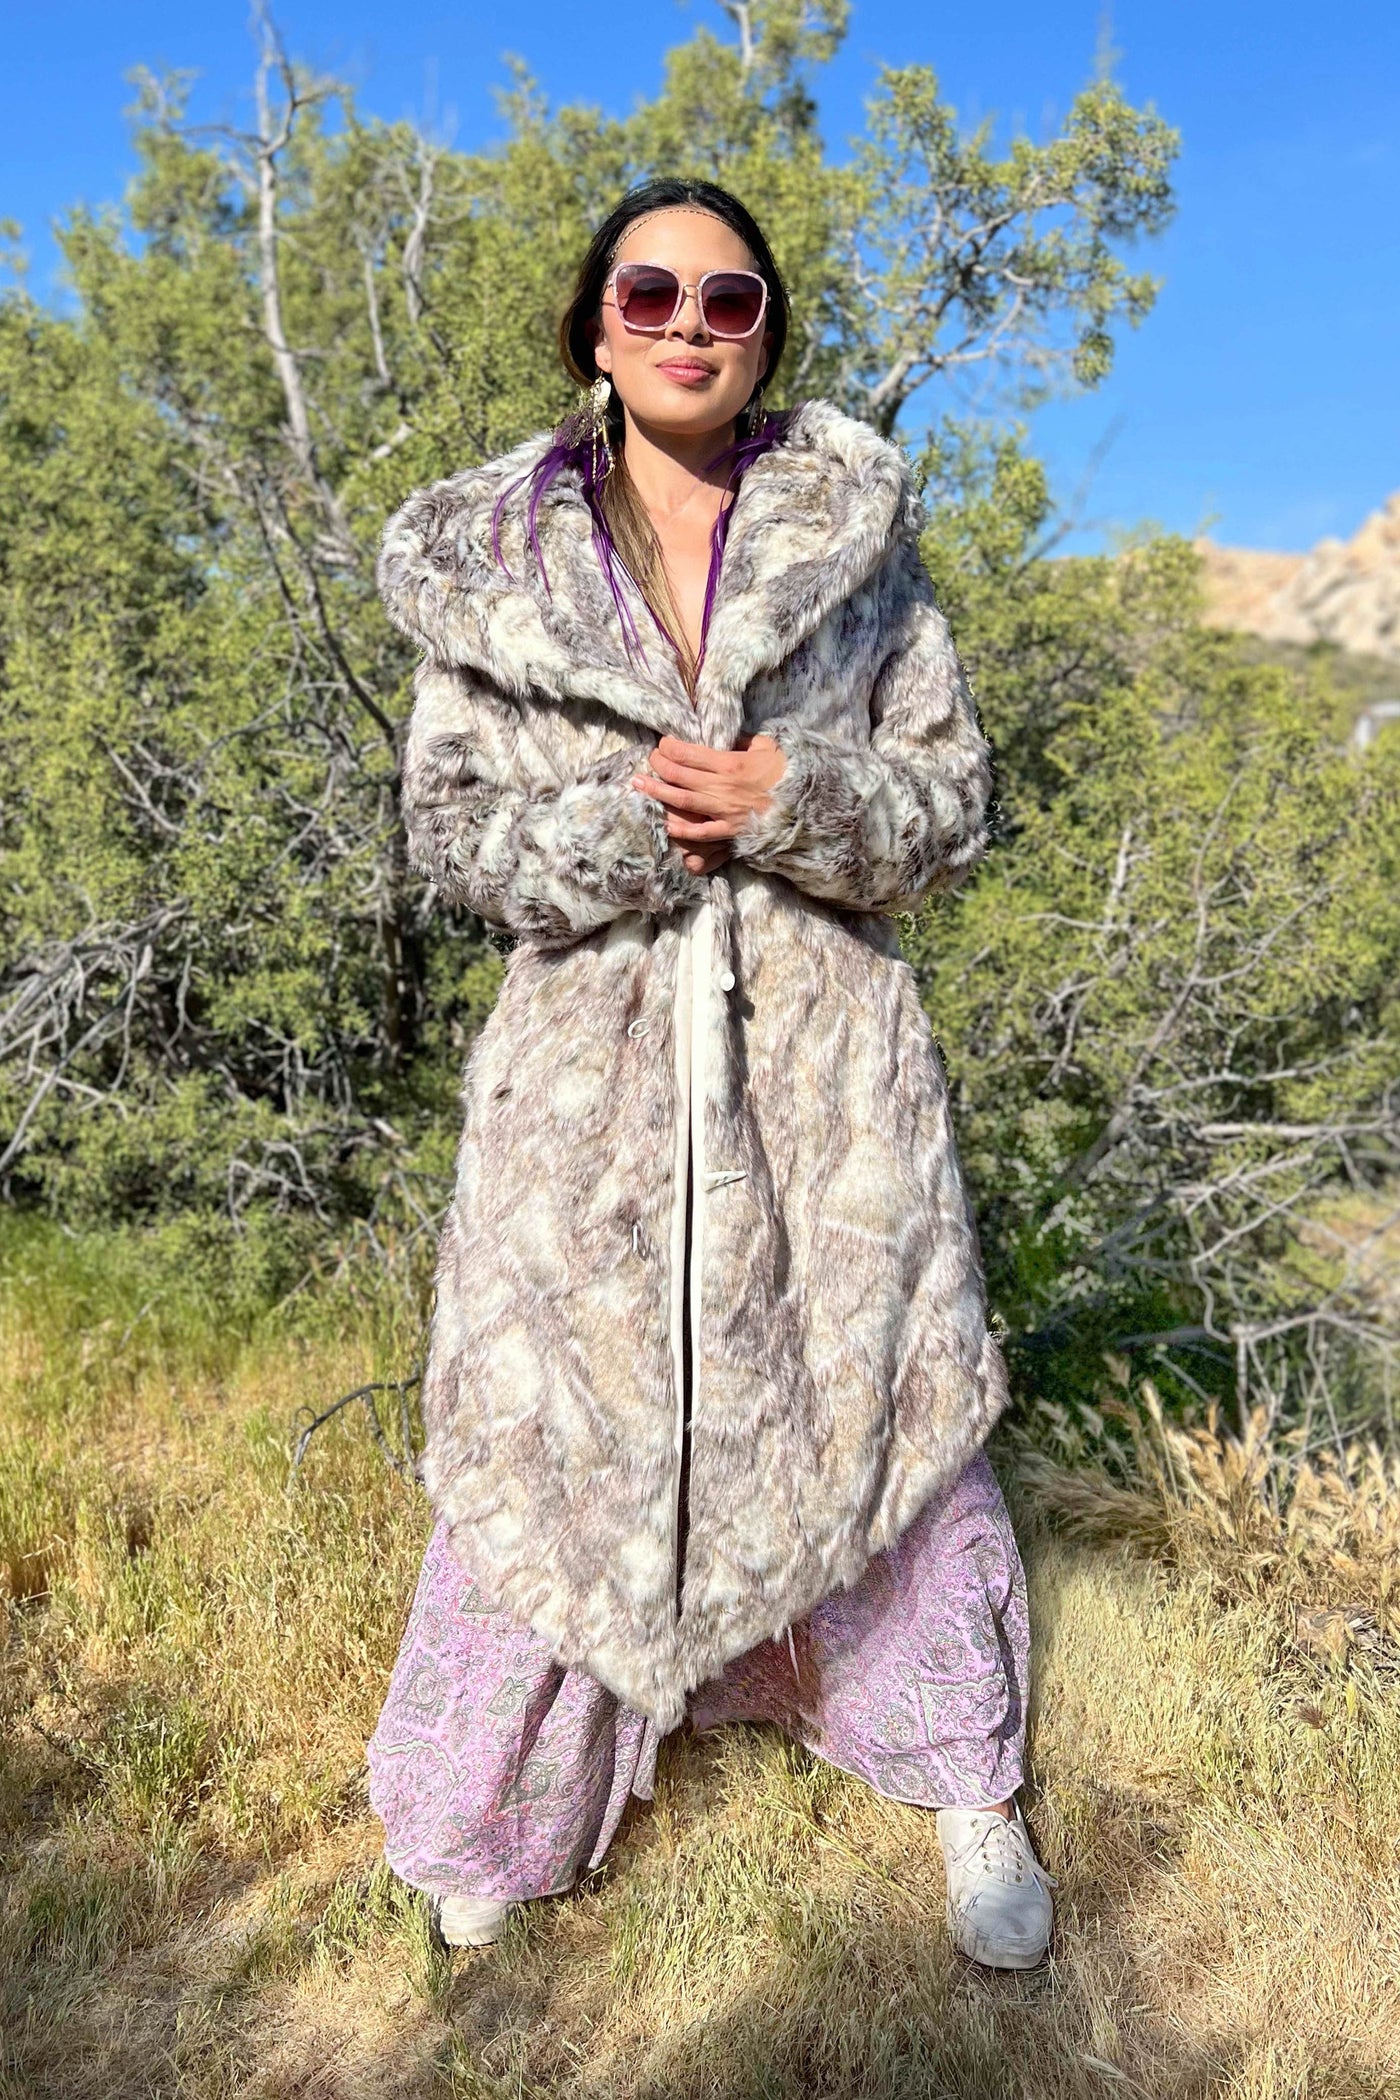 Women's Desert Warrior Coat in "Desert Wolf"